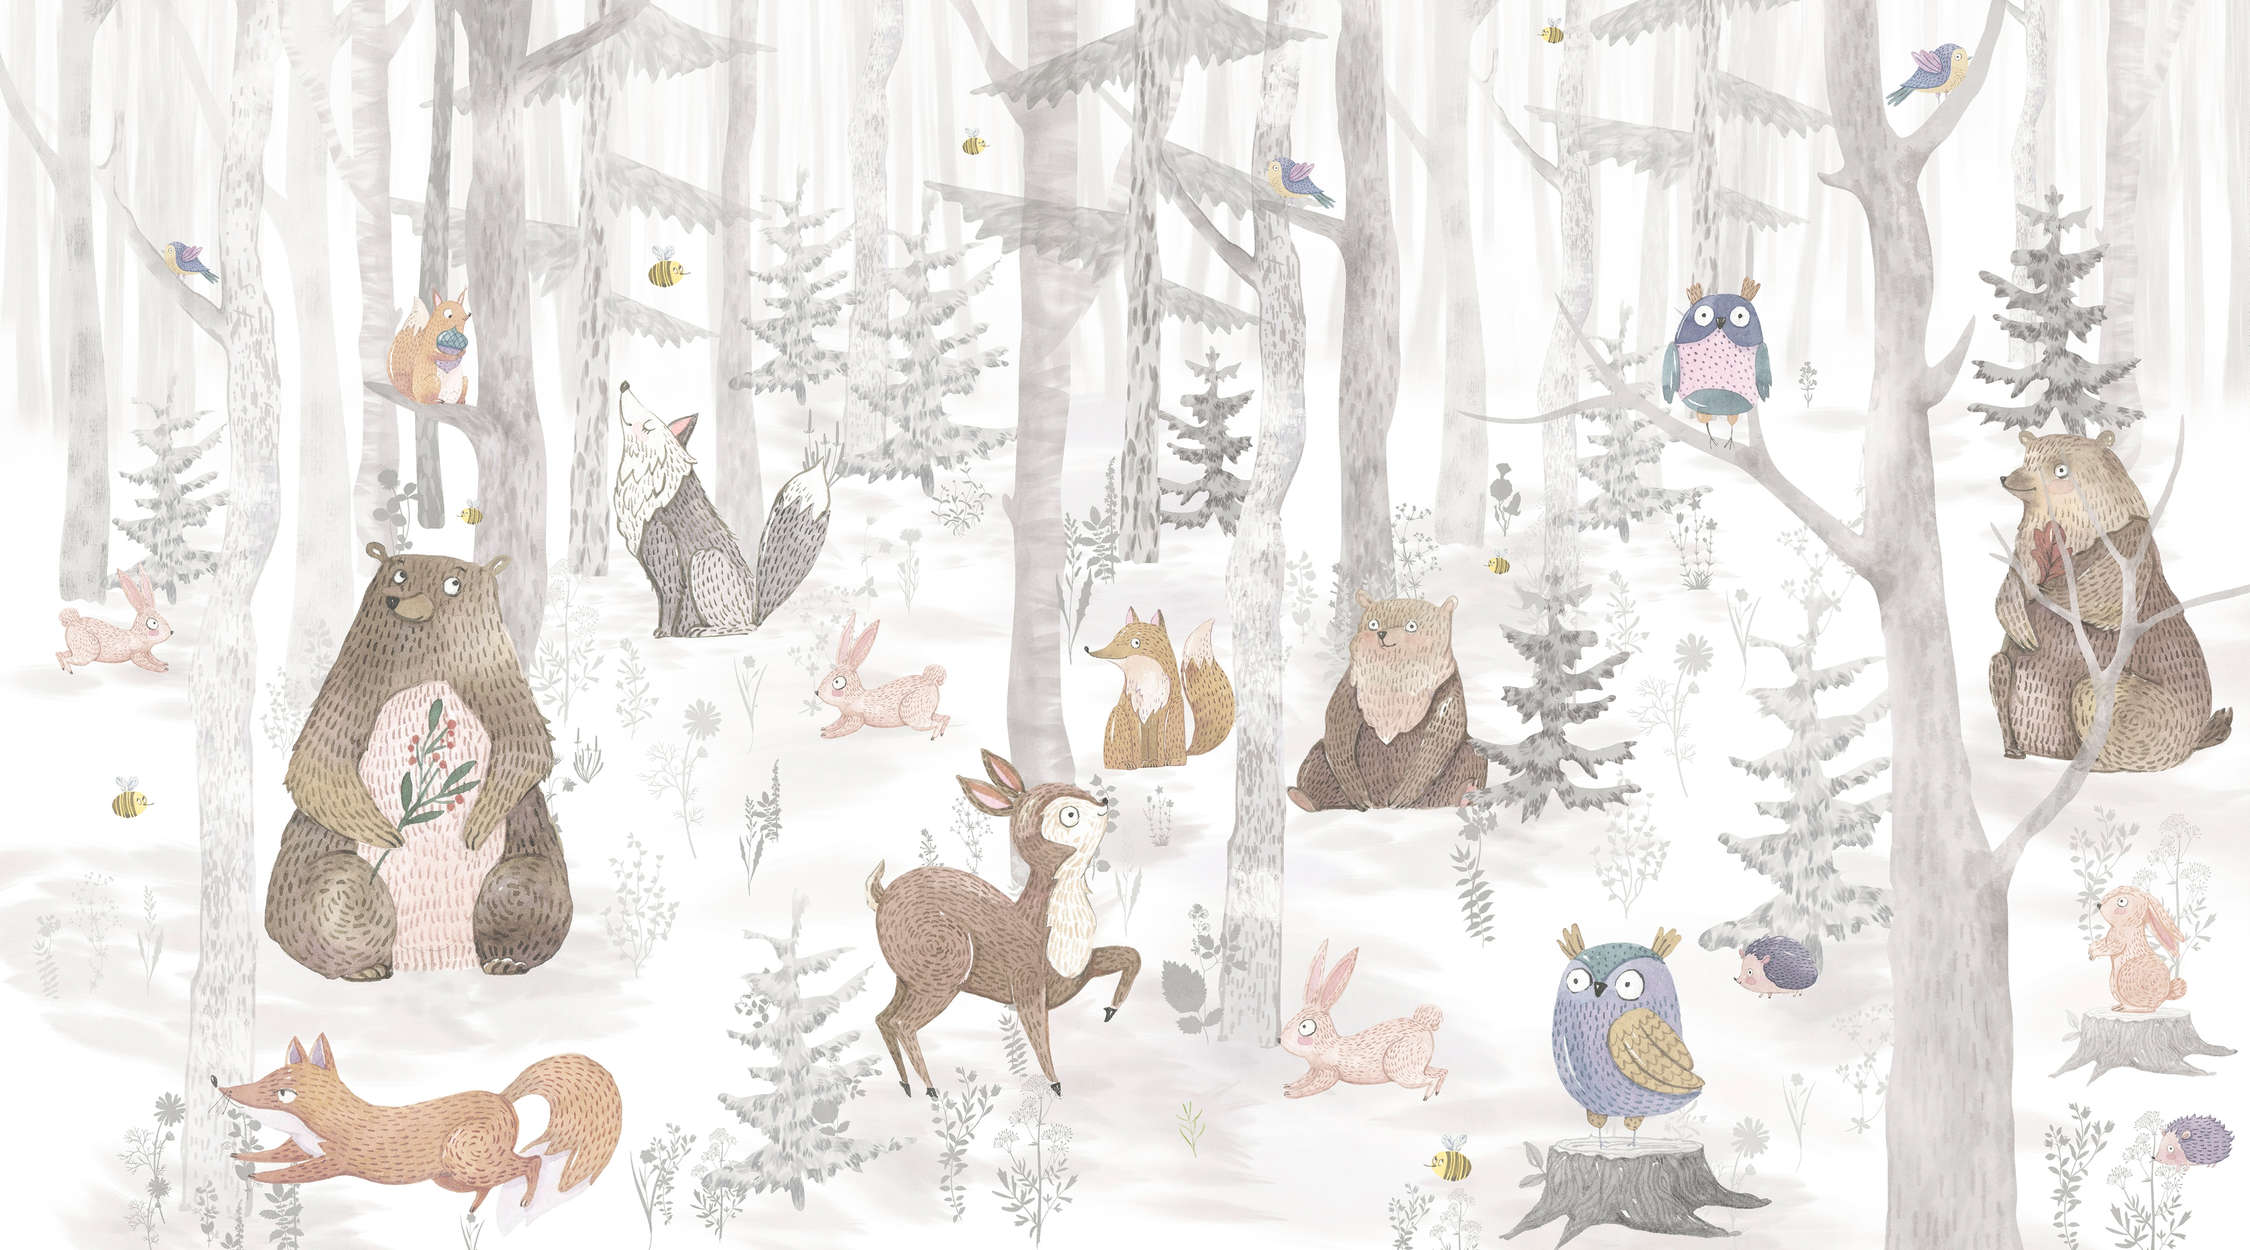             papiers peints à impression numérique forêt enchantée avec animaux - intissé lisse & mat
        